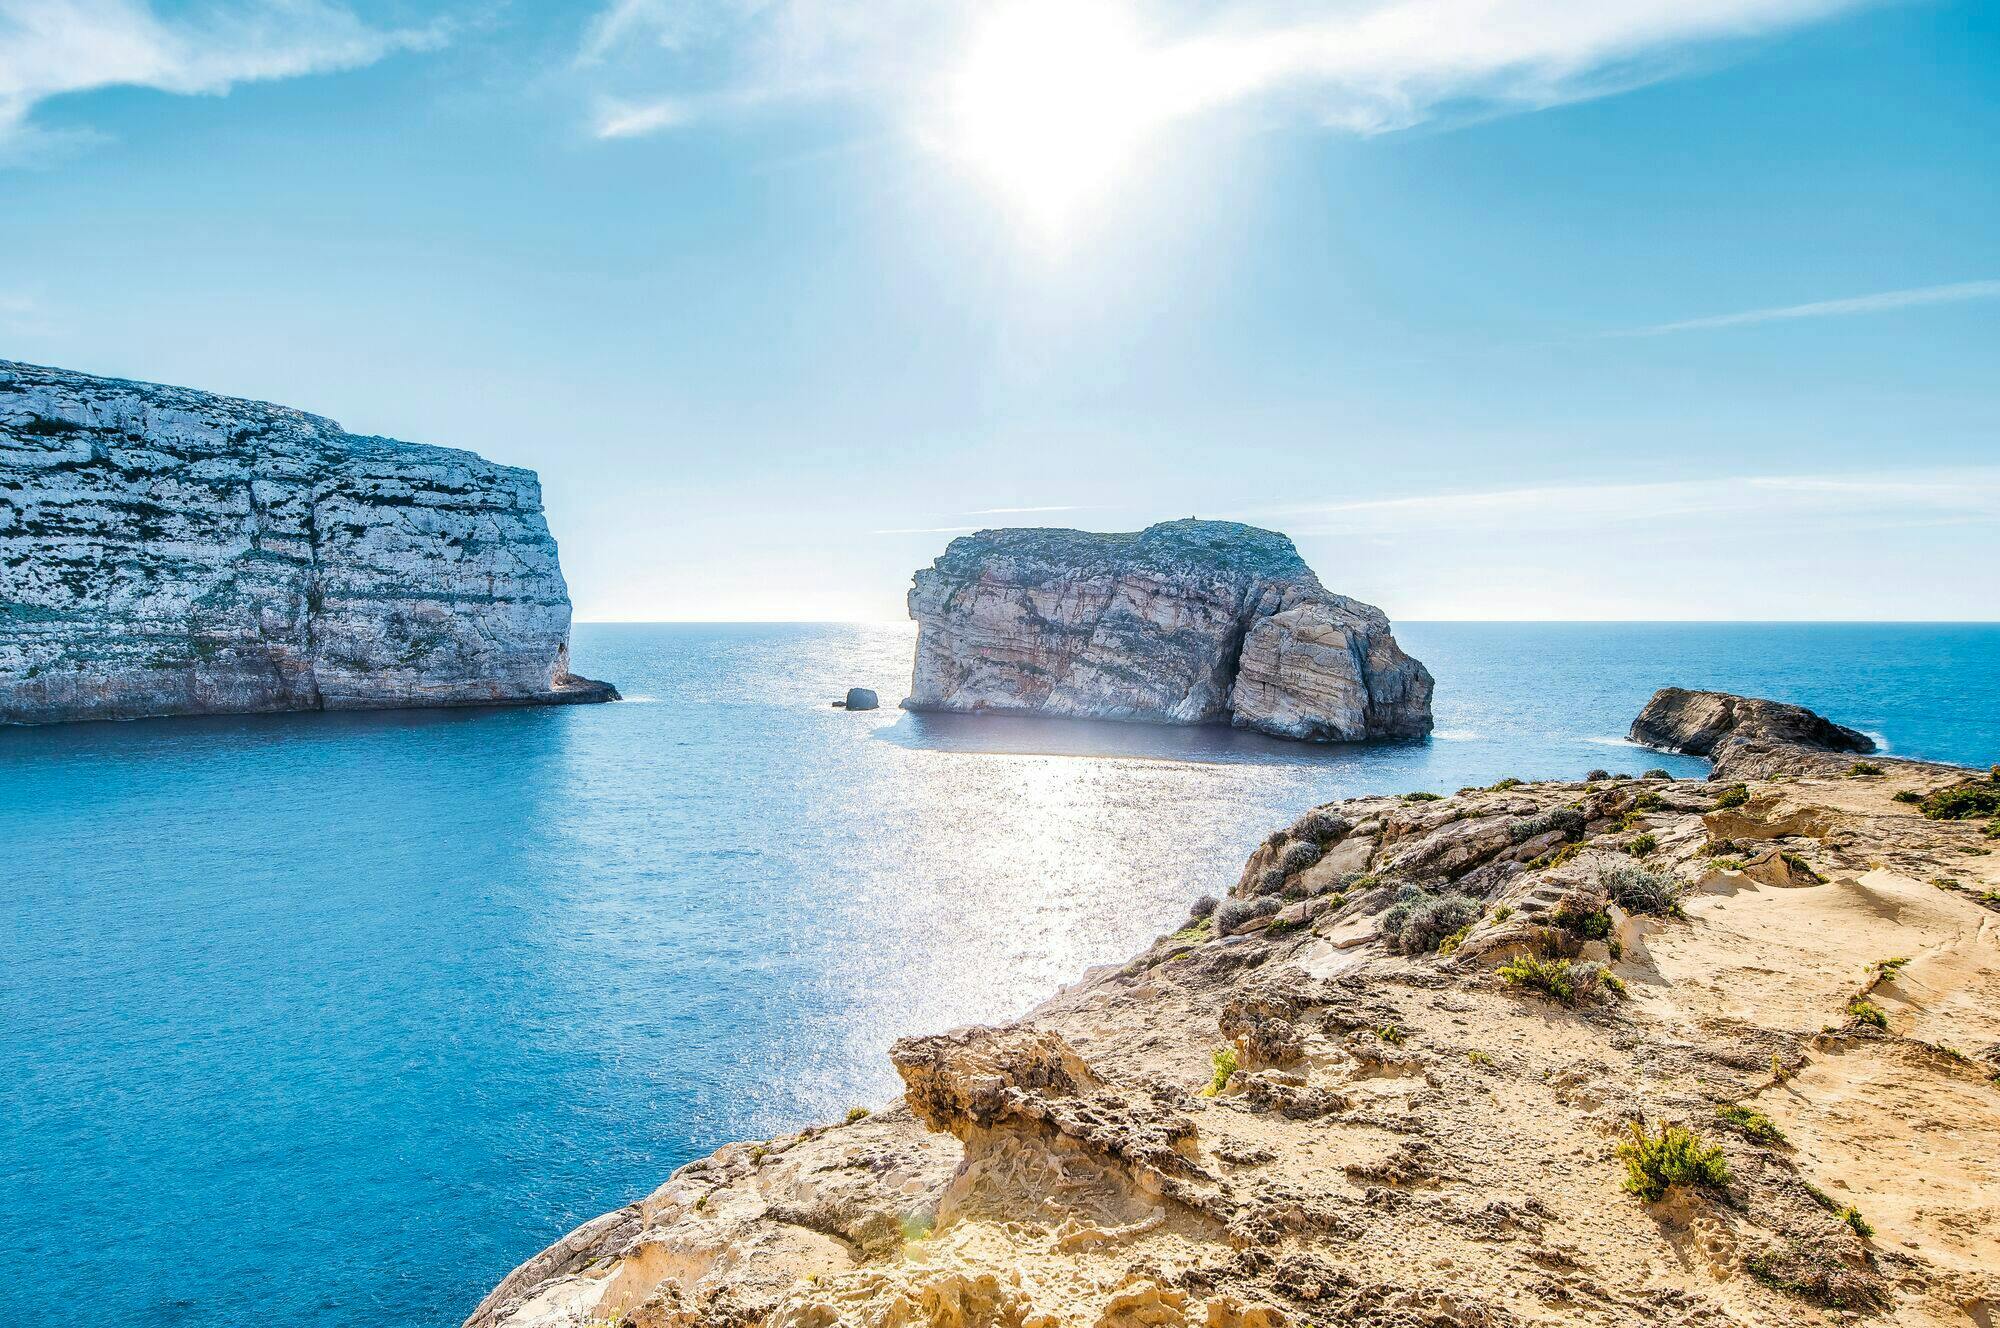 Gozo Island Tour with Victoria Citadel